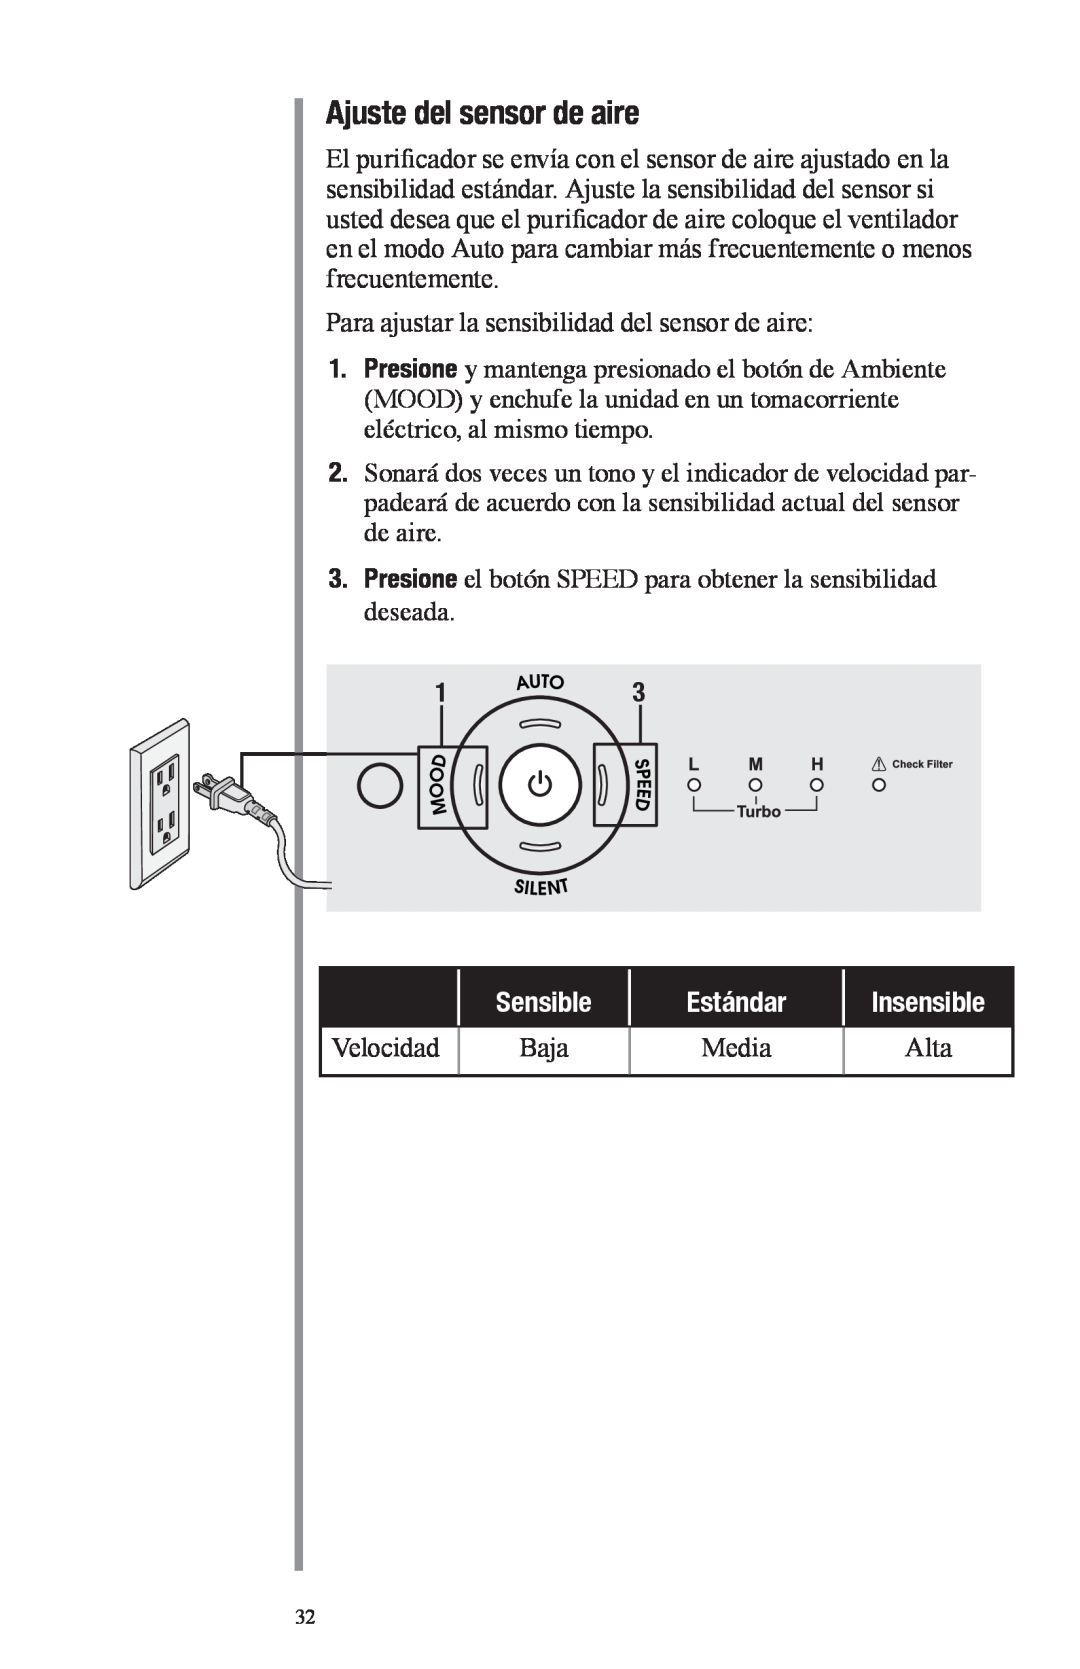 Oreck Air manual Ajuste del sensor de aire, Sensible, Estándar, Insensible 